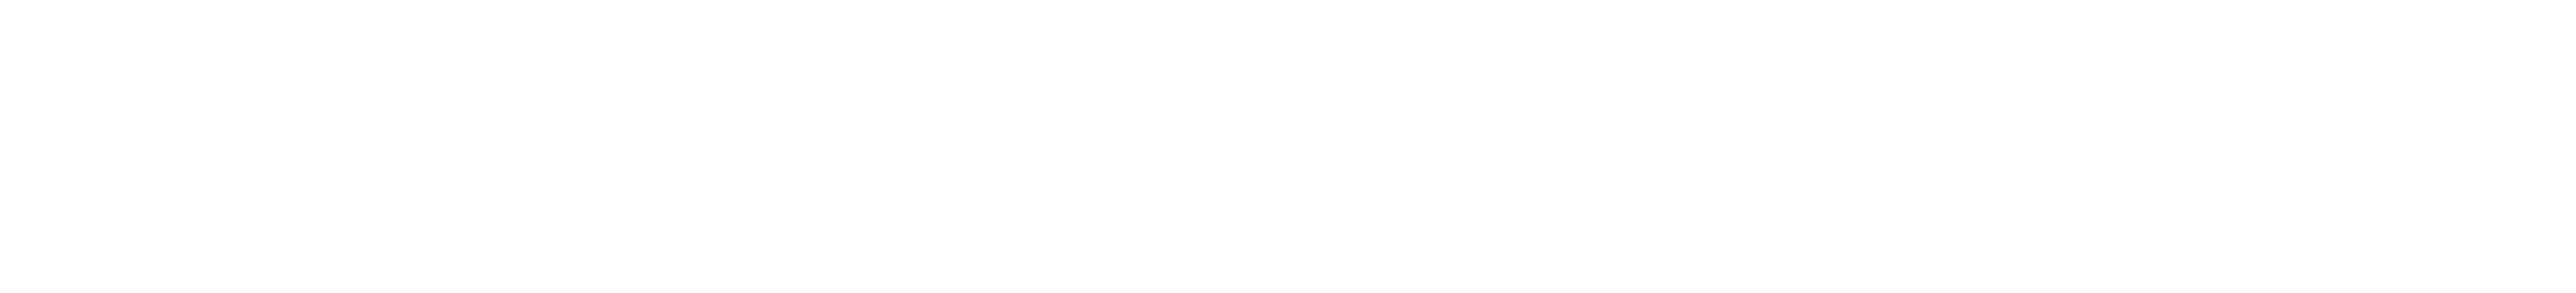 public health phd columbia